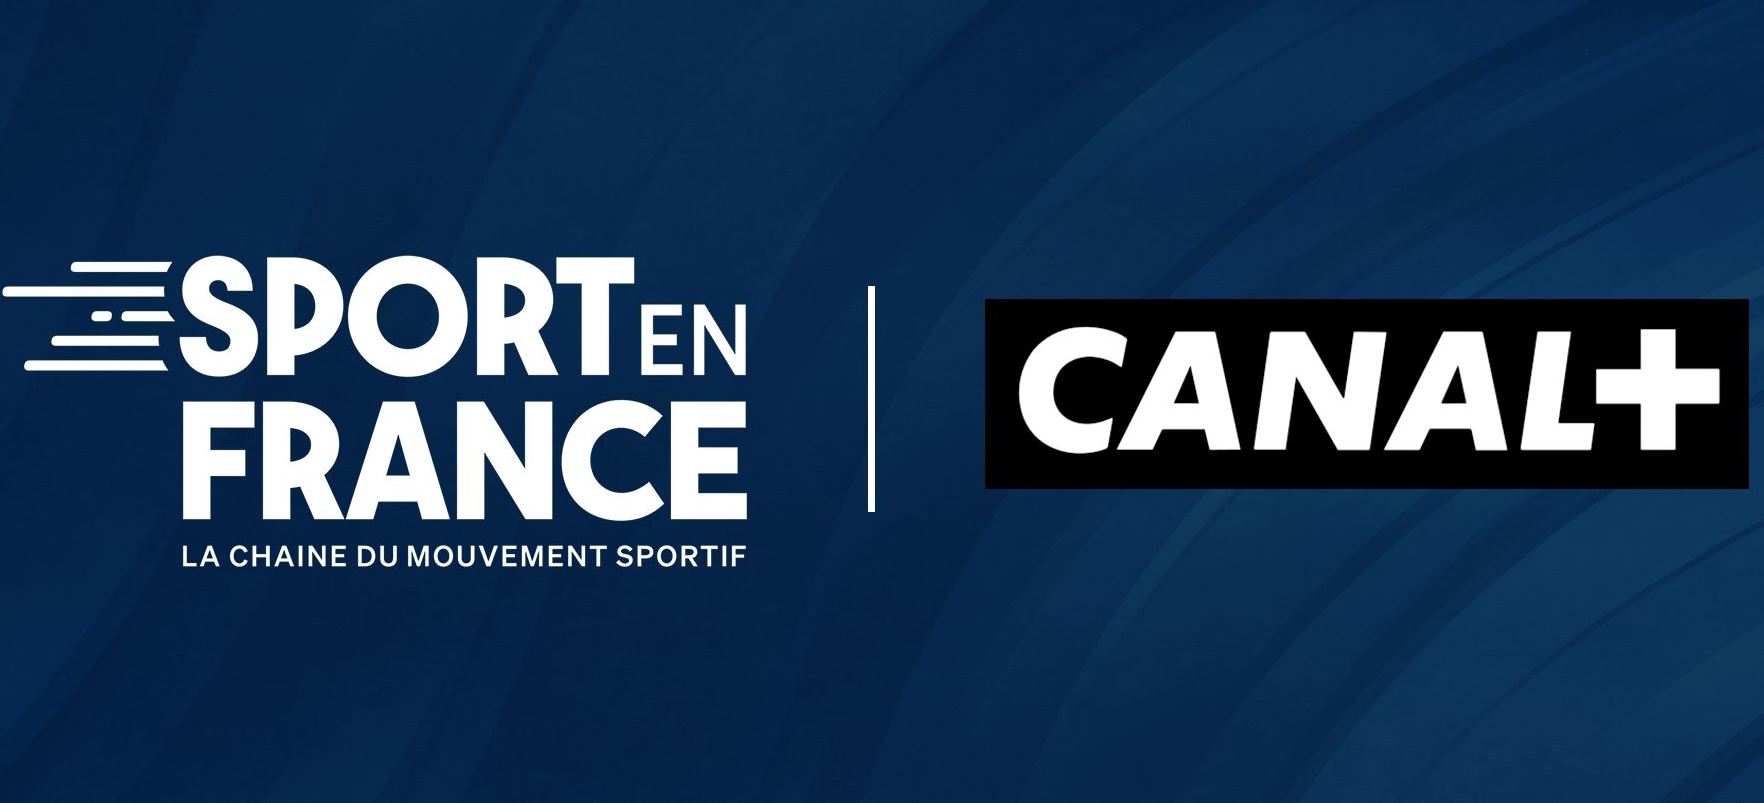 La Chaîne Sport en France maintenant disponible au sein des offres Canal+